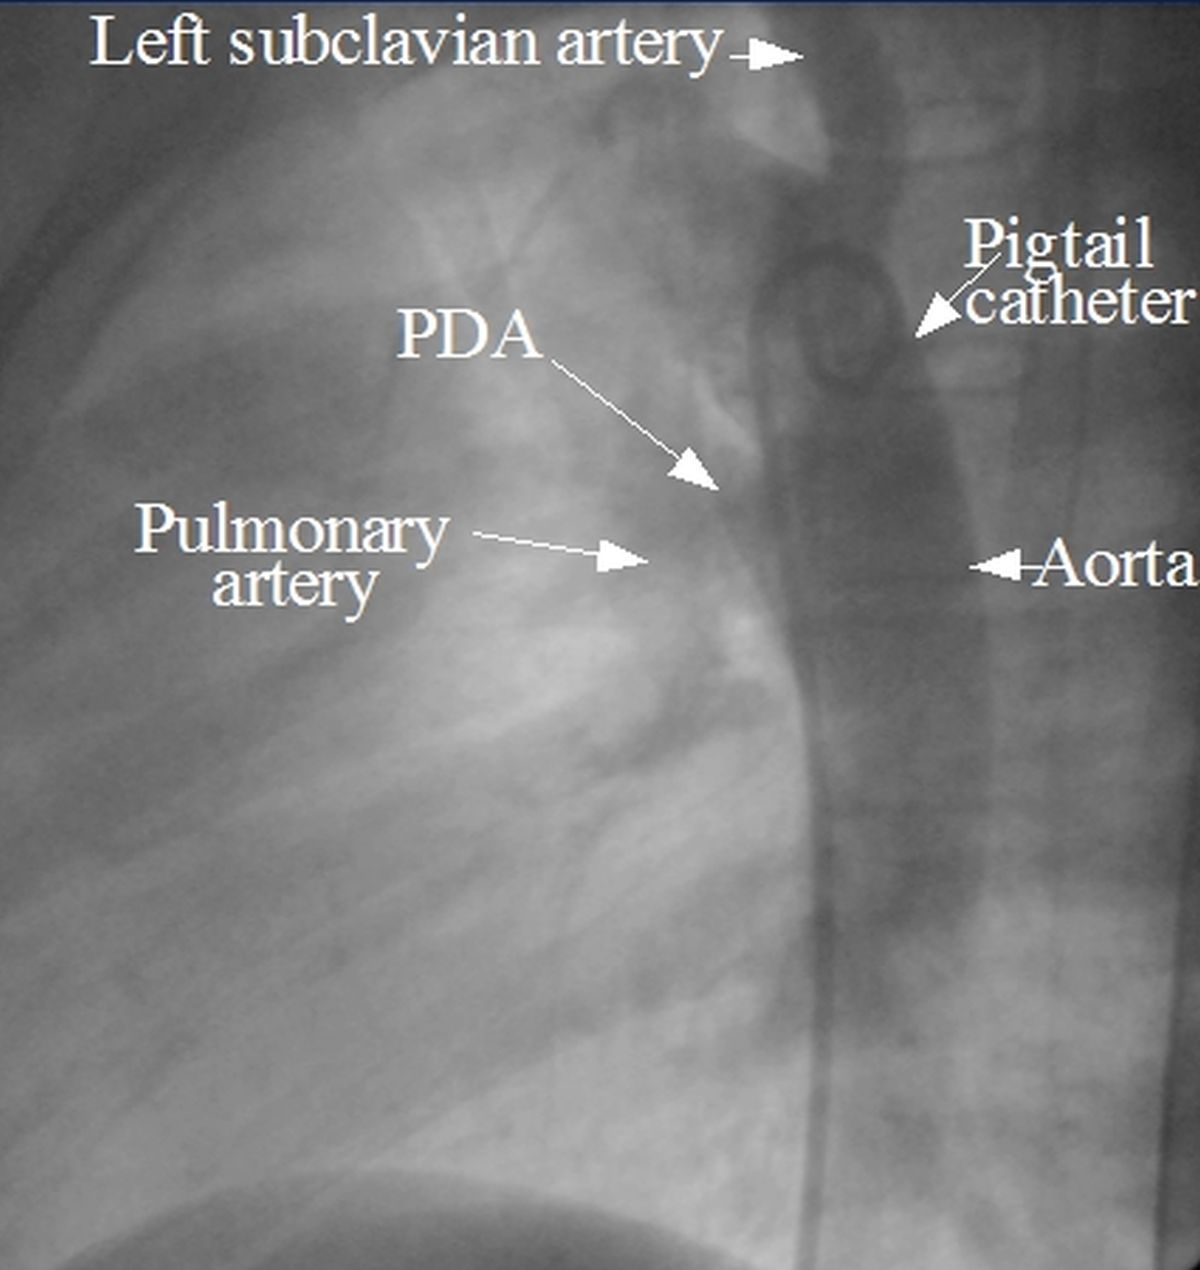 Patent ductus arteriosus - angio